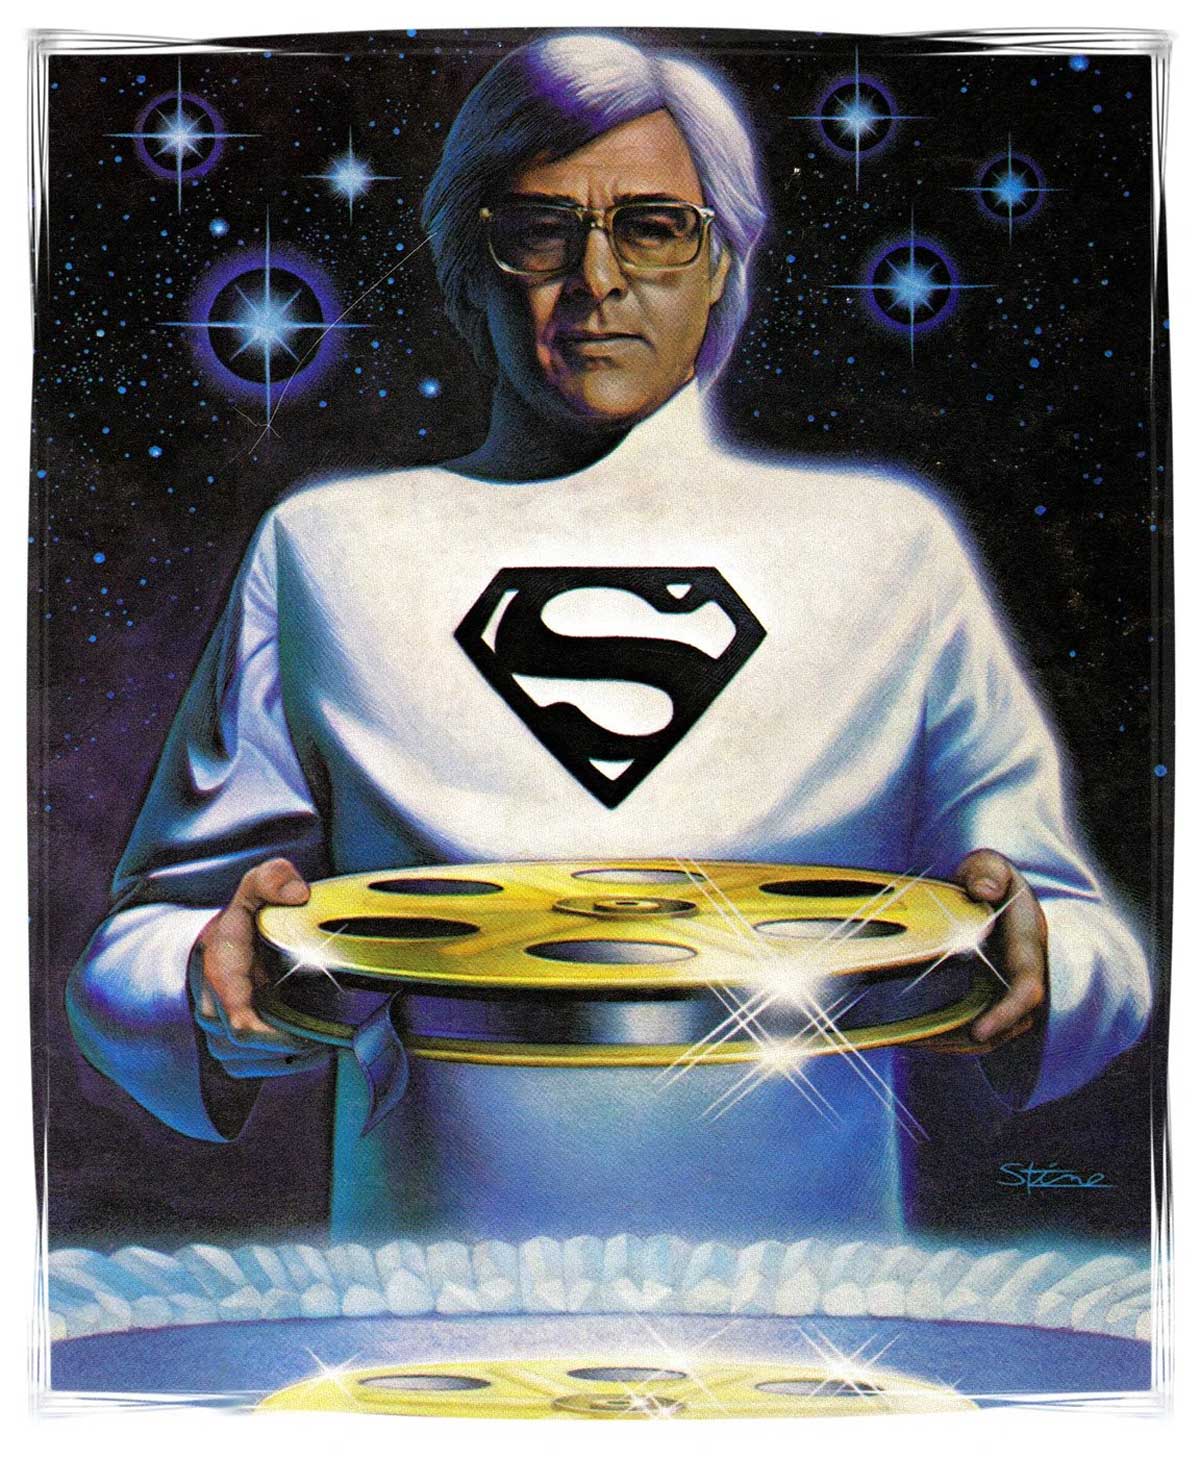 ریچارد دانر، فیلم ساز بزرگ و سازنده بهترین فیلم سوپرمن از دنیا رفت